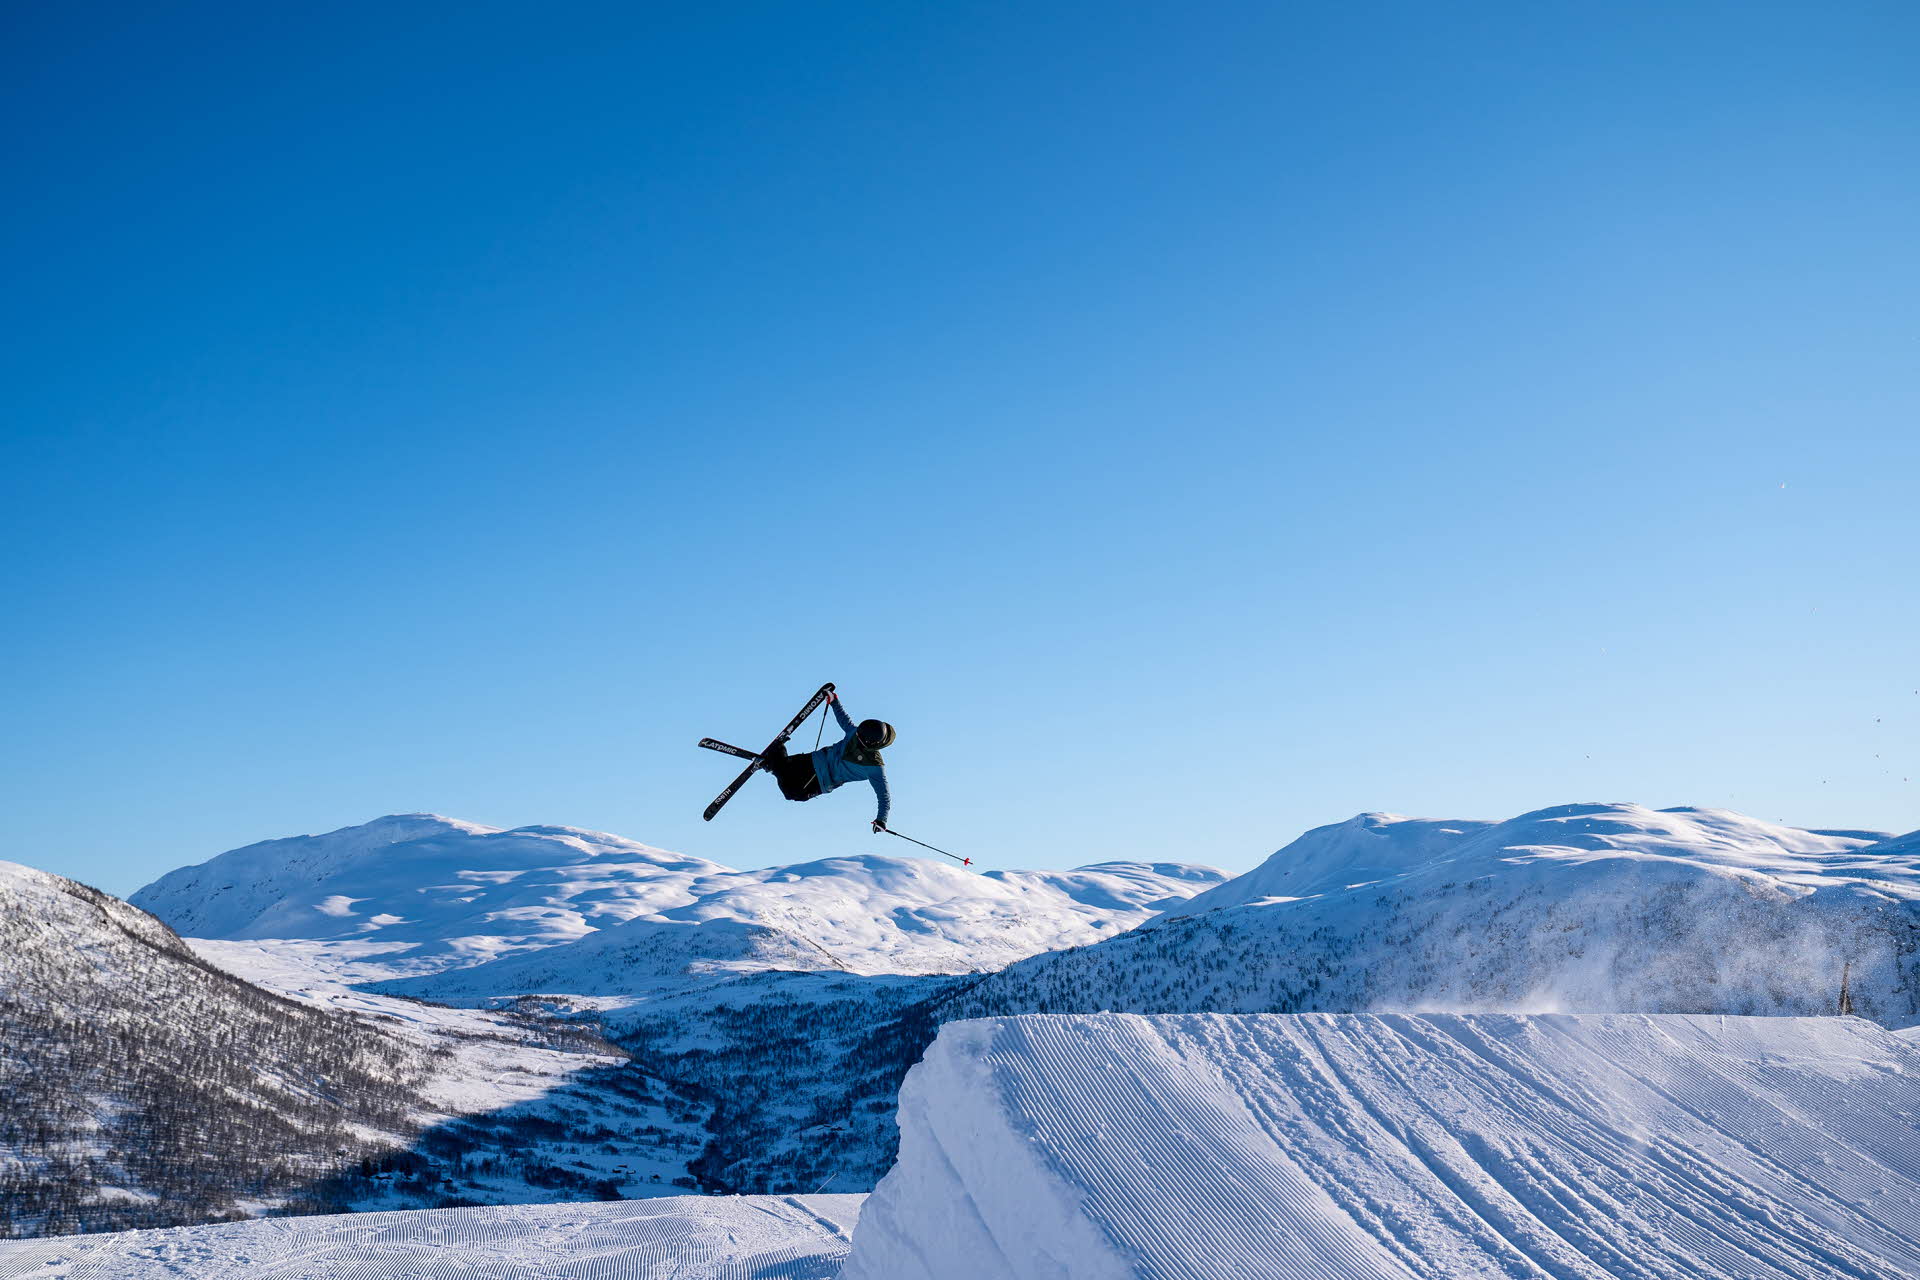 ミュルダレン マウンテンリゾートでスキーに飛び乗る人物。周囲の青空と山の風景。 